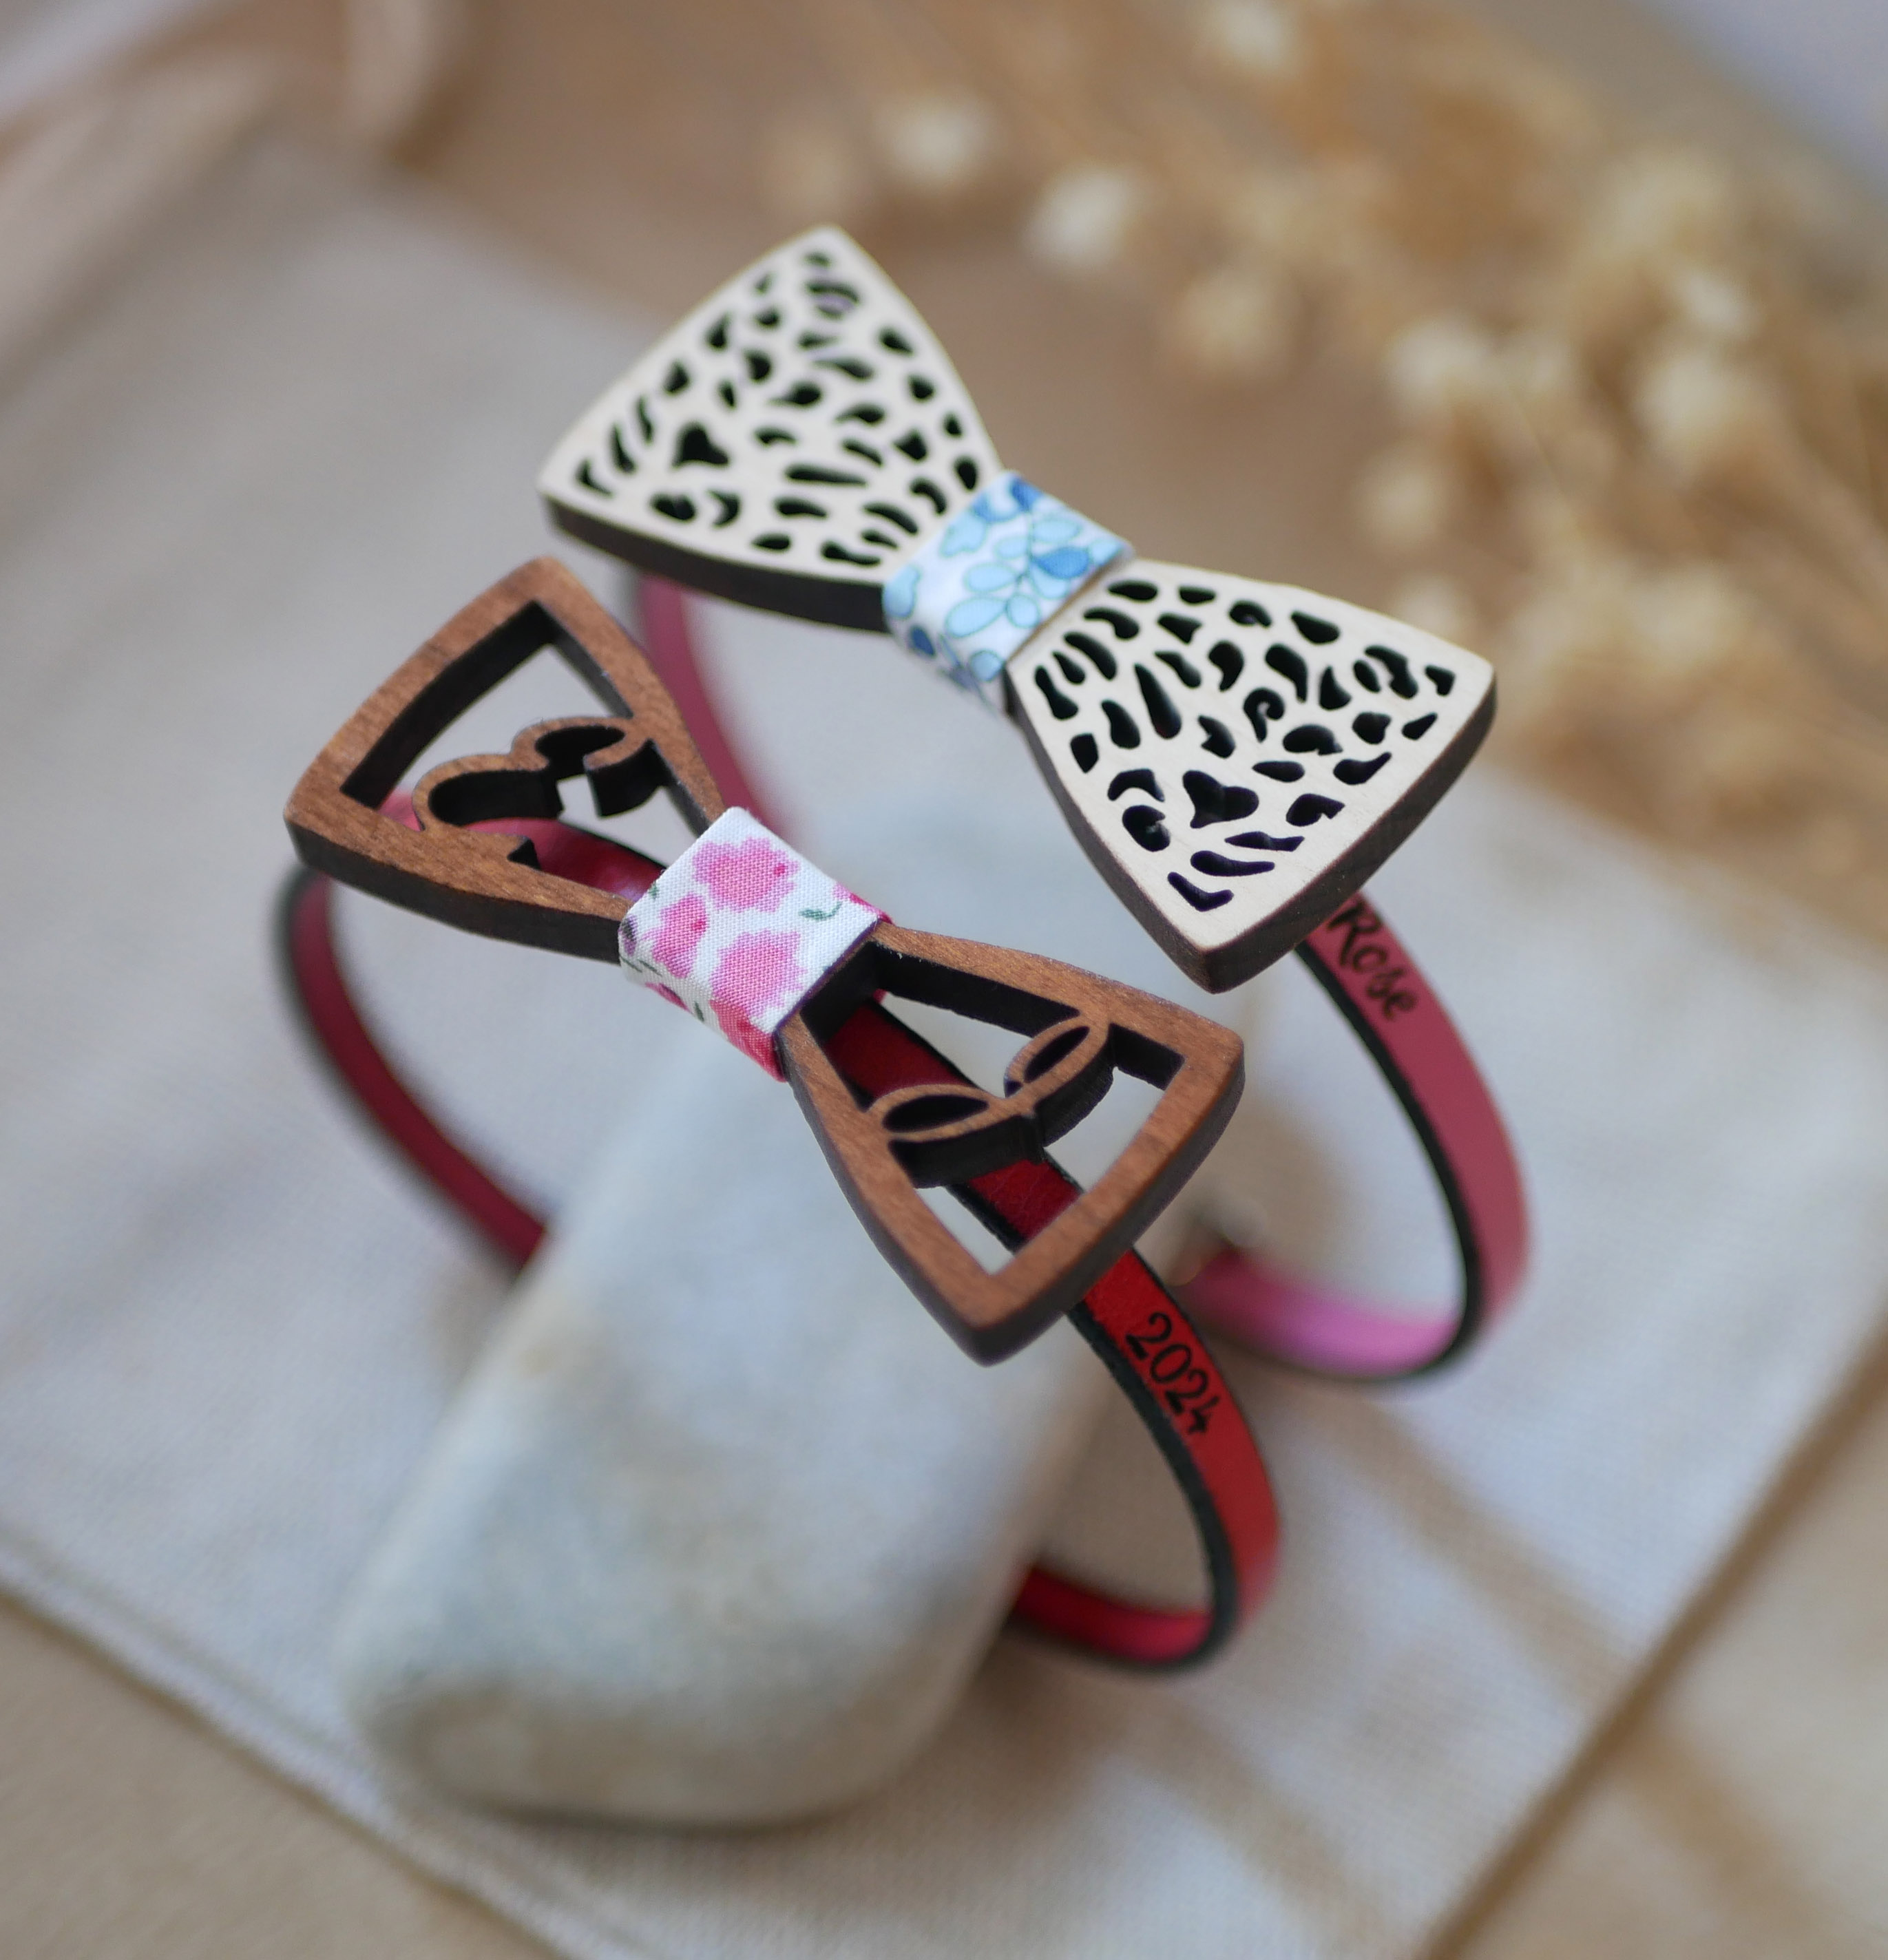 Bracciale in pelle con miniatura di papillon in legno traforato, personalizzabile